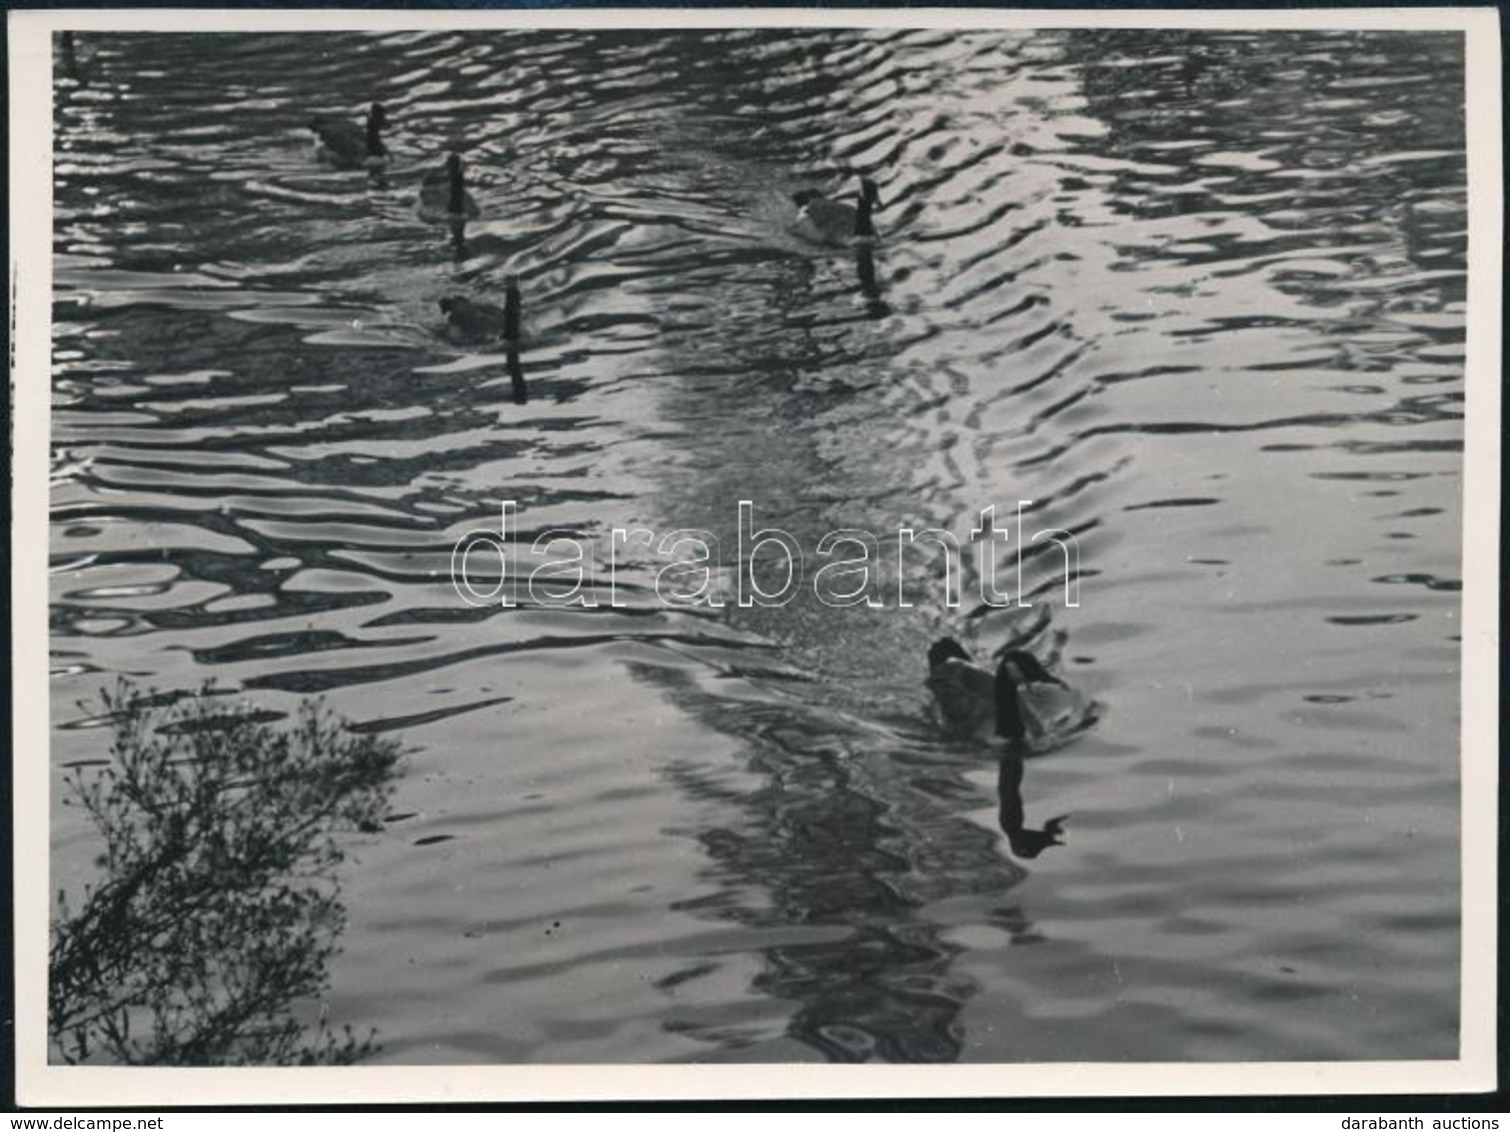 Cca 1933 Kinszki Imre (1901-1945) Budapesti Fotóművész Pecséttel Jelzett Vintage Fotóművészeti Alkotása (Aquatic Pattern - Other & Unclassified